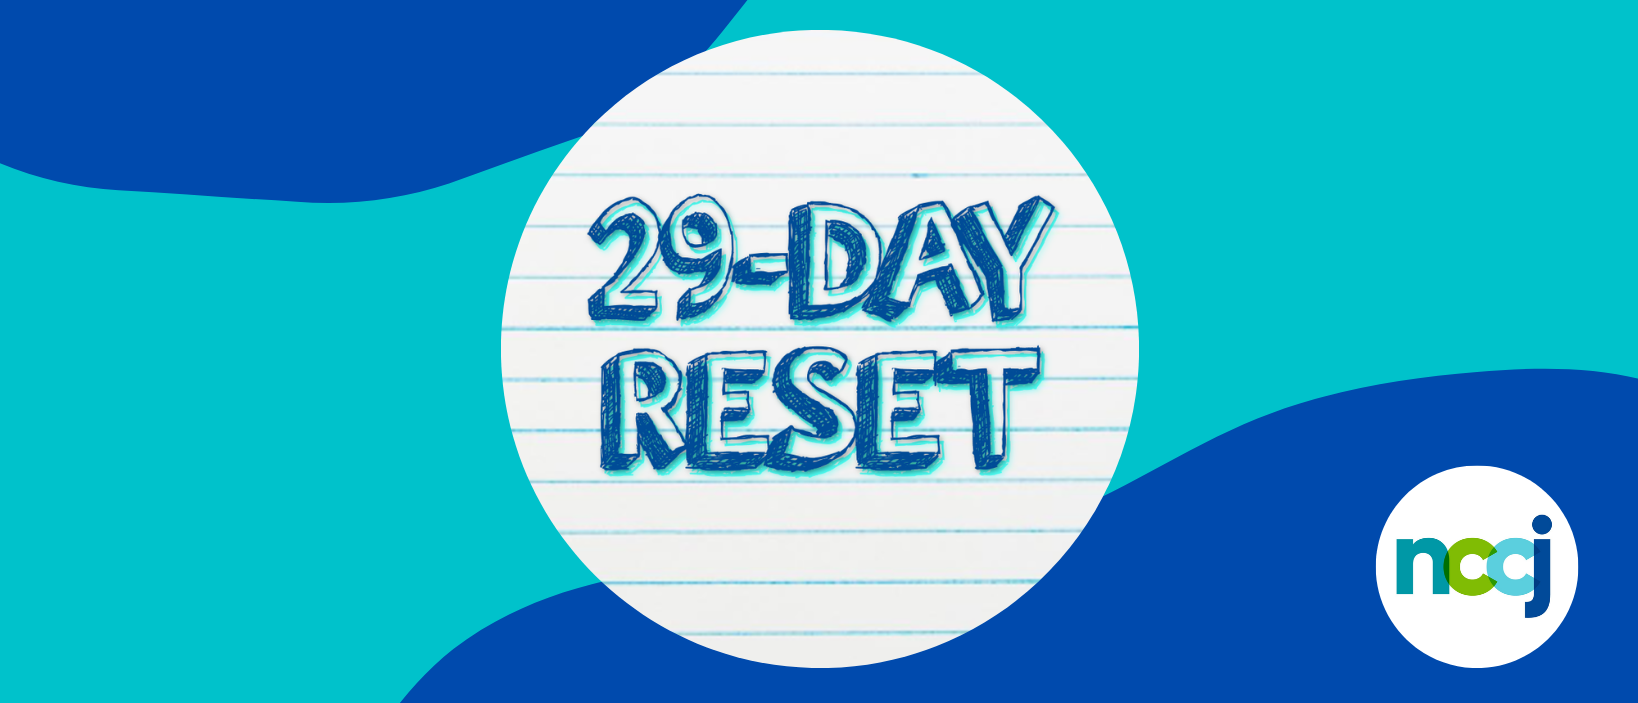 29-Day Reset